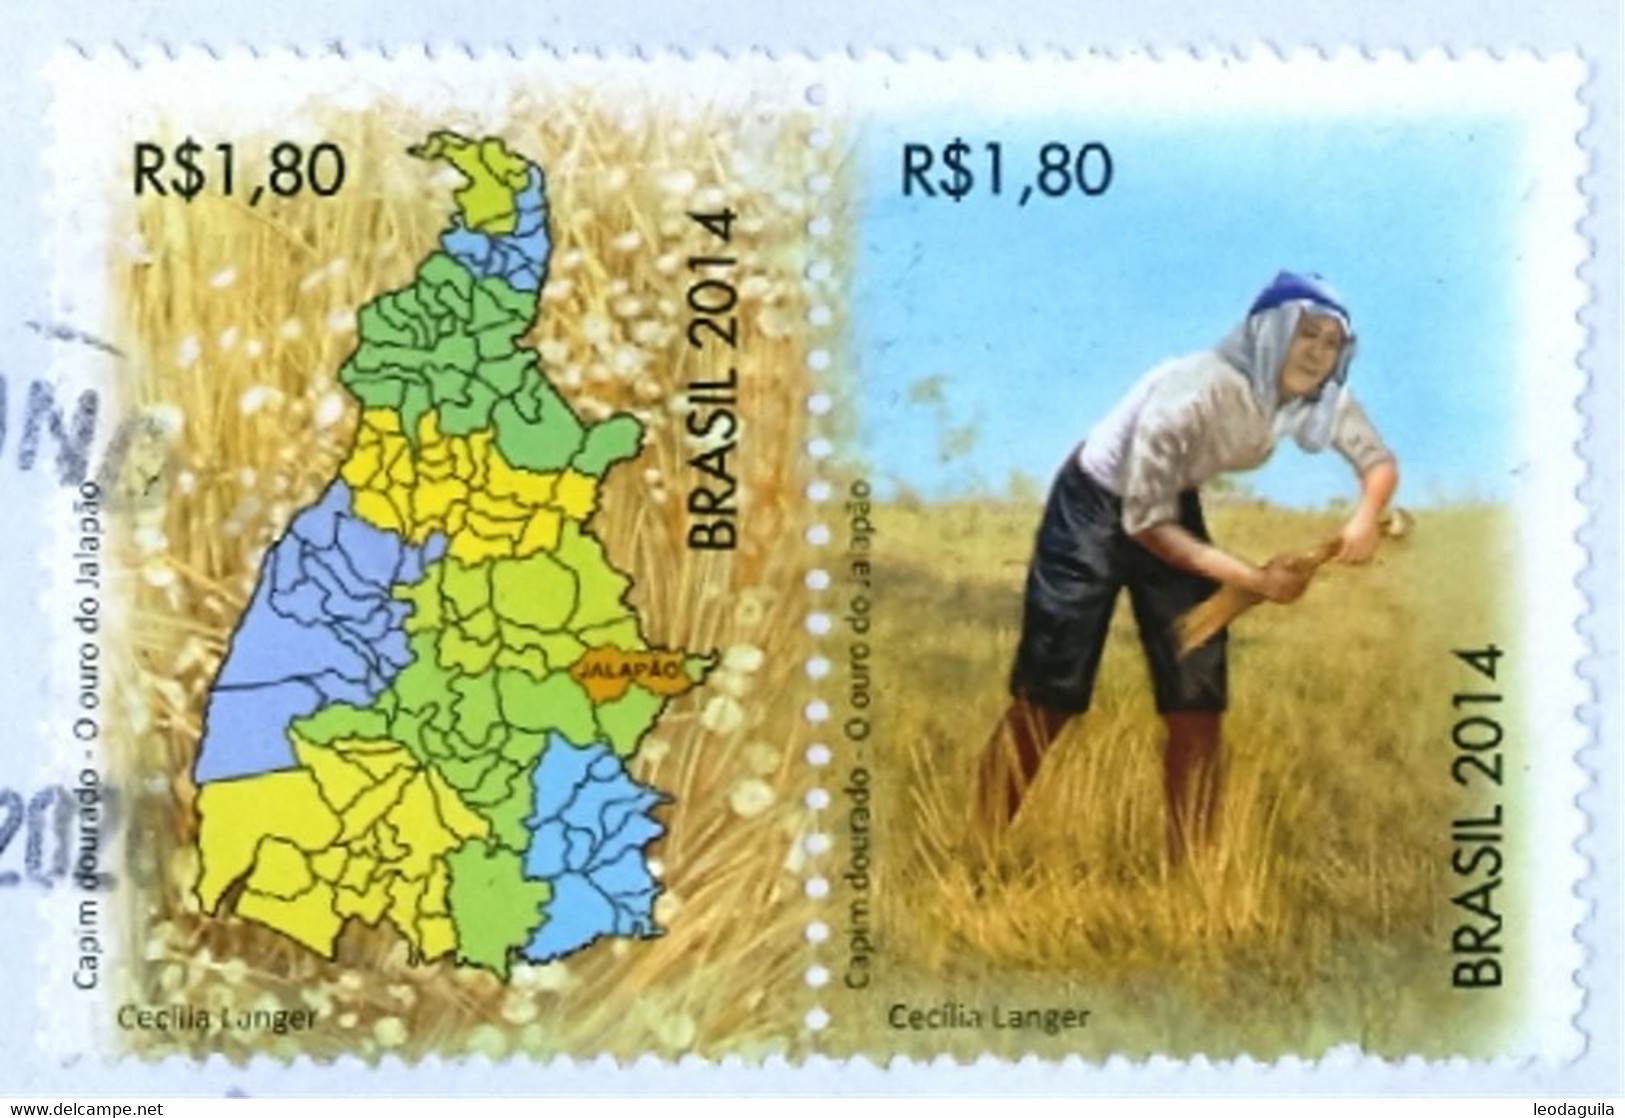 BRAZIL 2014  - FARM WORKER HARVESTING GOLDEN GRASS  (Syngonanthus Nitens) - Used Stamps